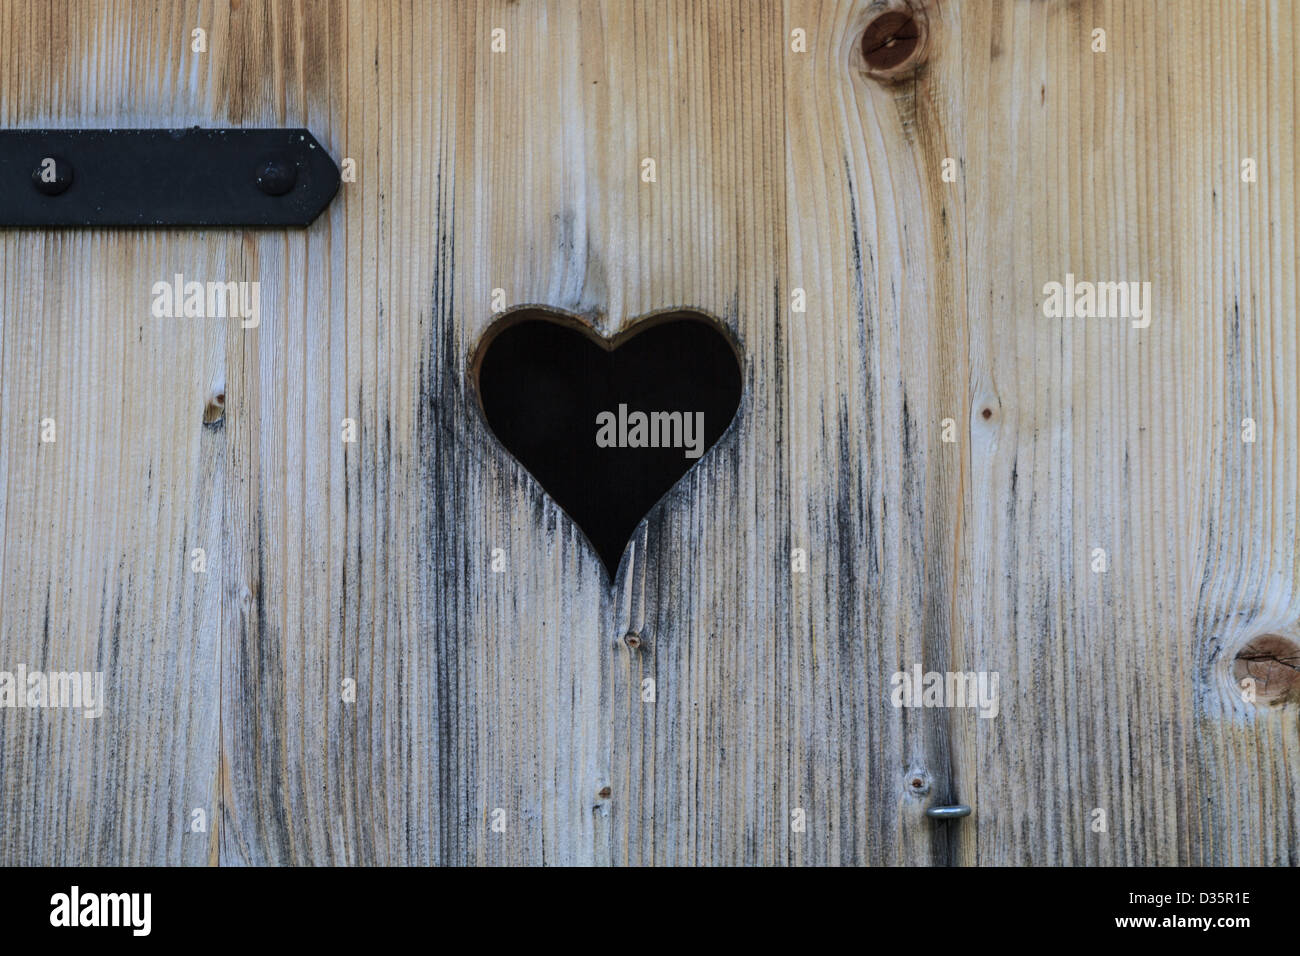 Heart in old wooden door Stock Photo